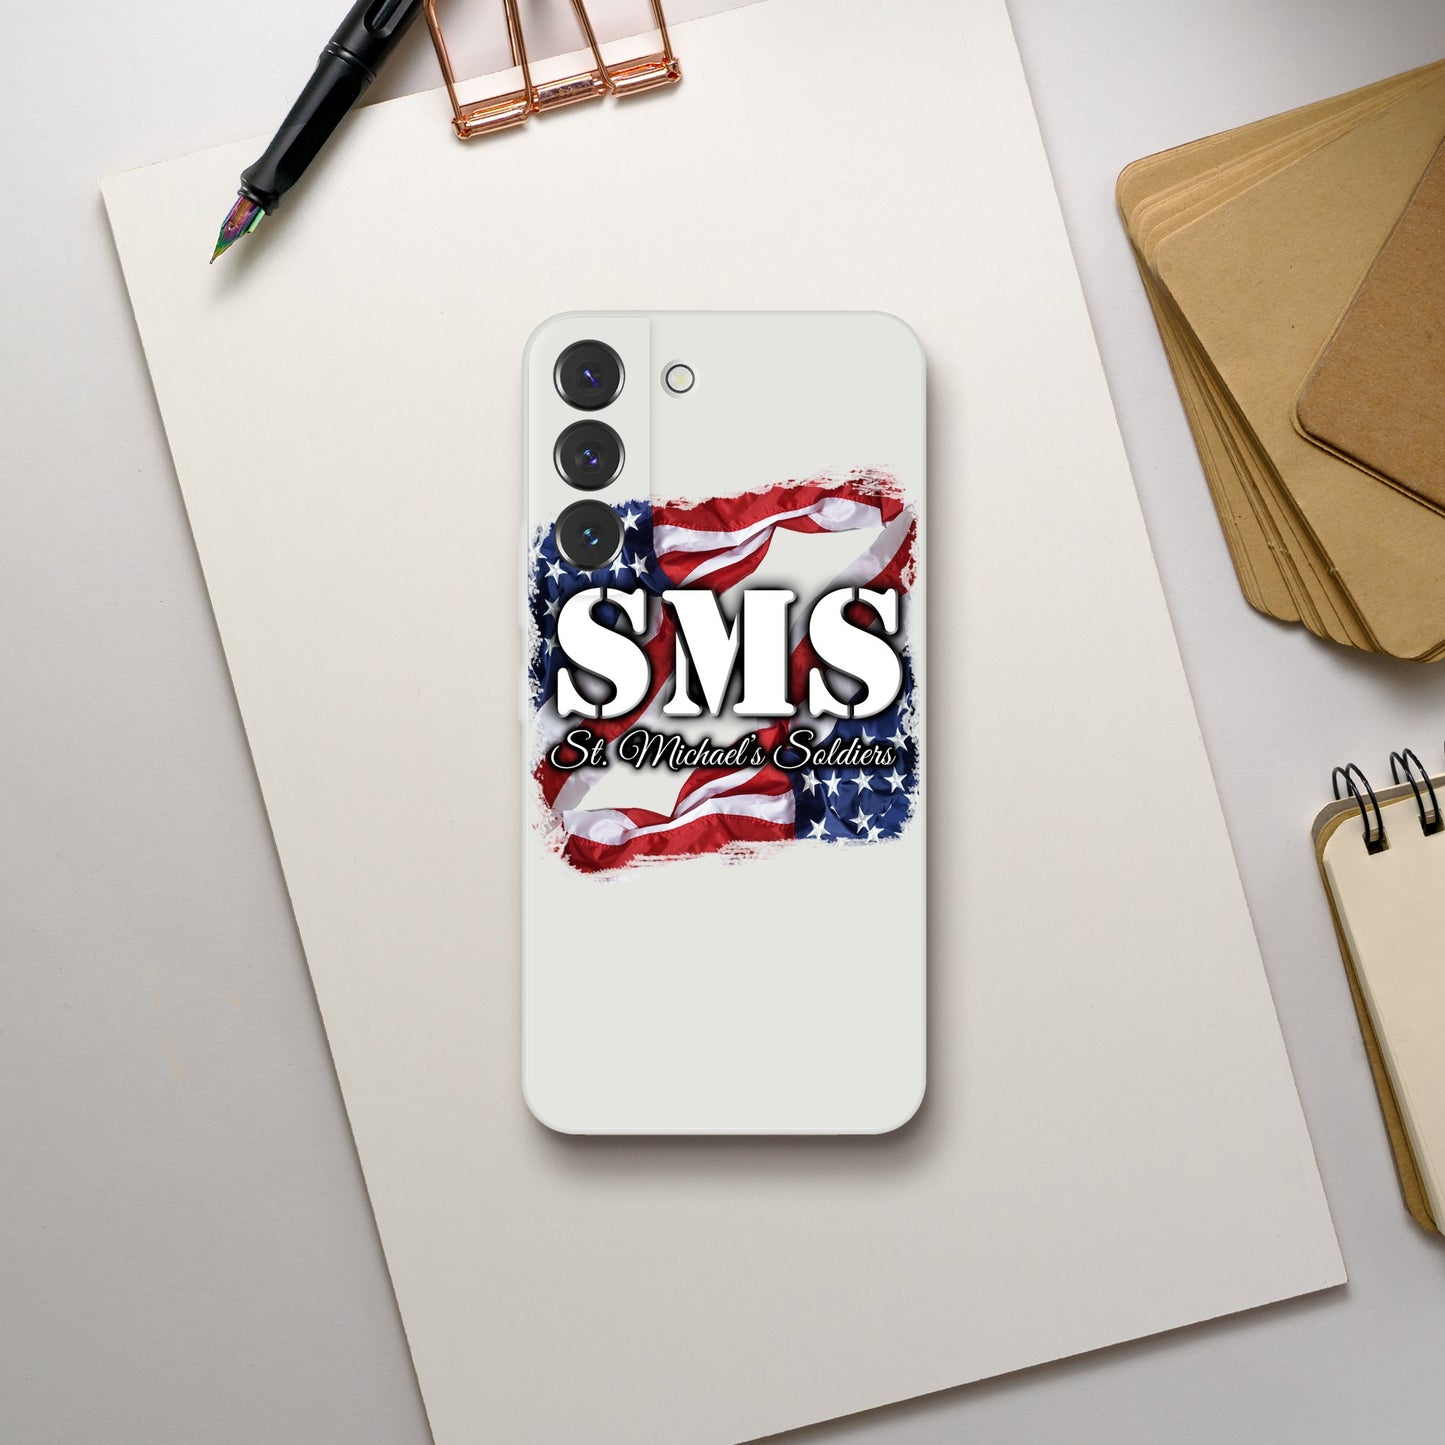 SMS (Flag1) - iPhone Tough case - Flexi case